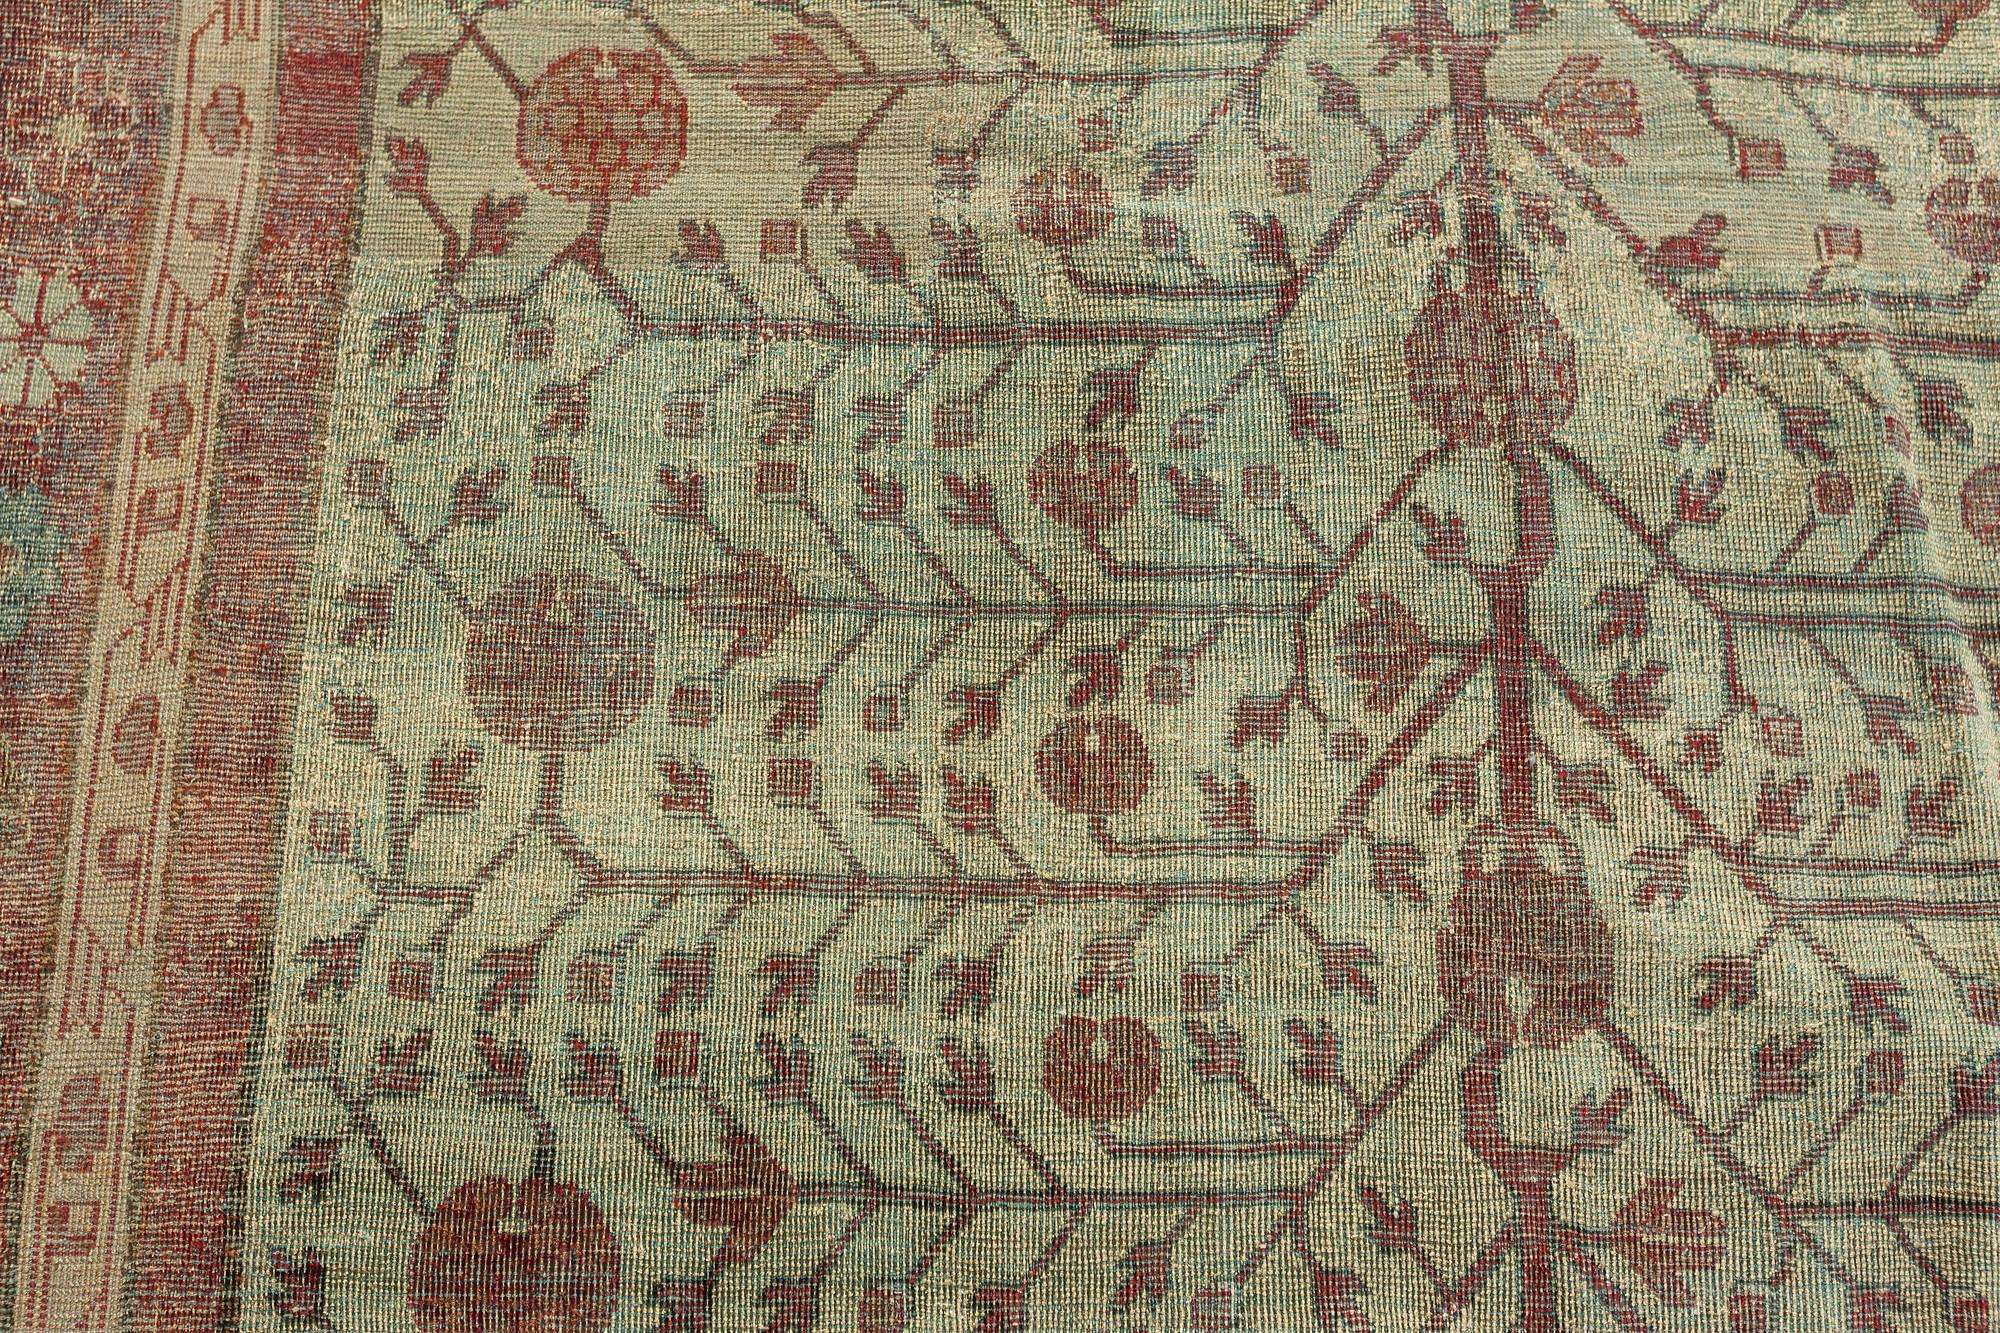 Seiden-Yarkand-Samarkand-Teppich
Größe: 10'10